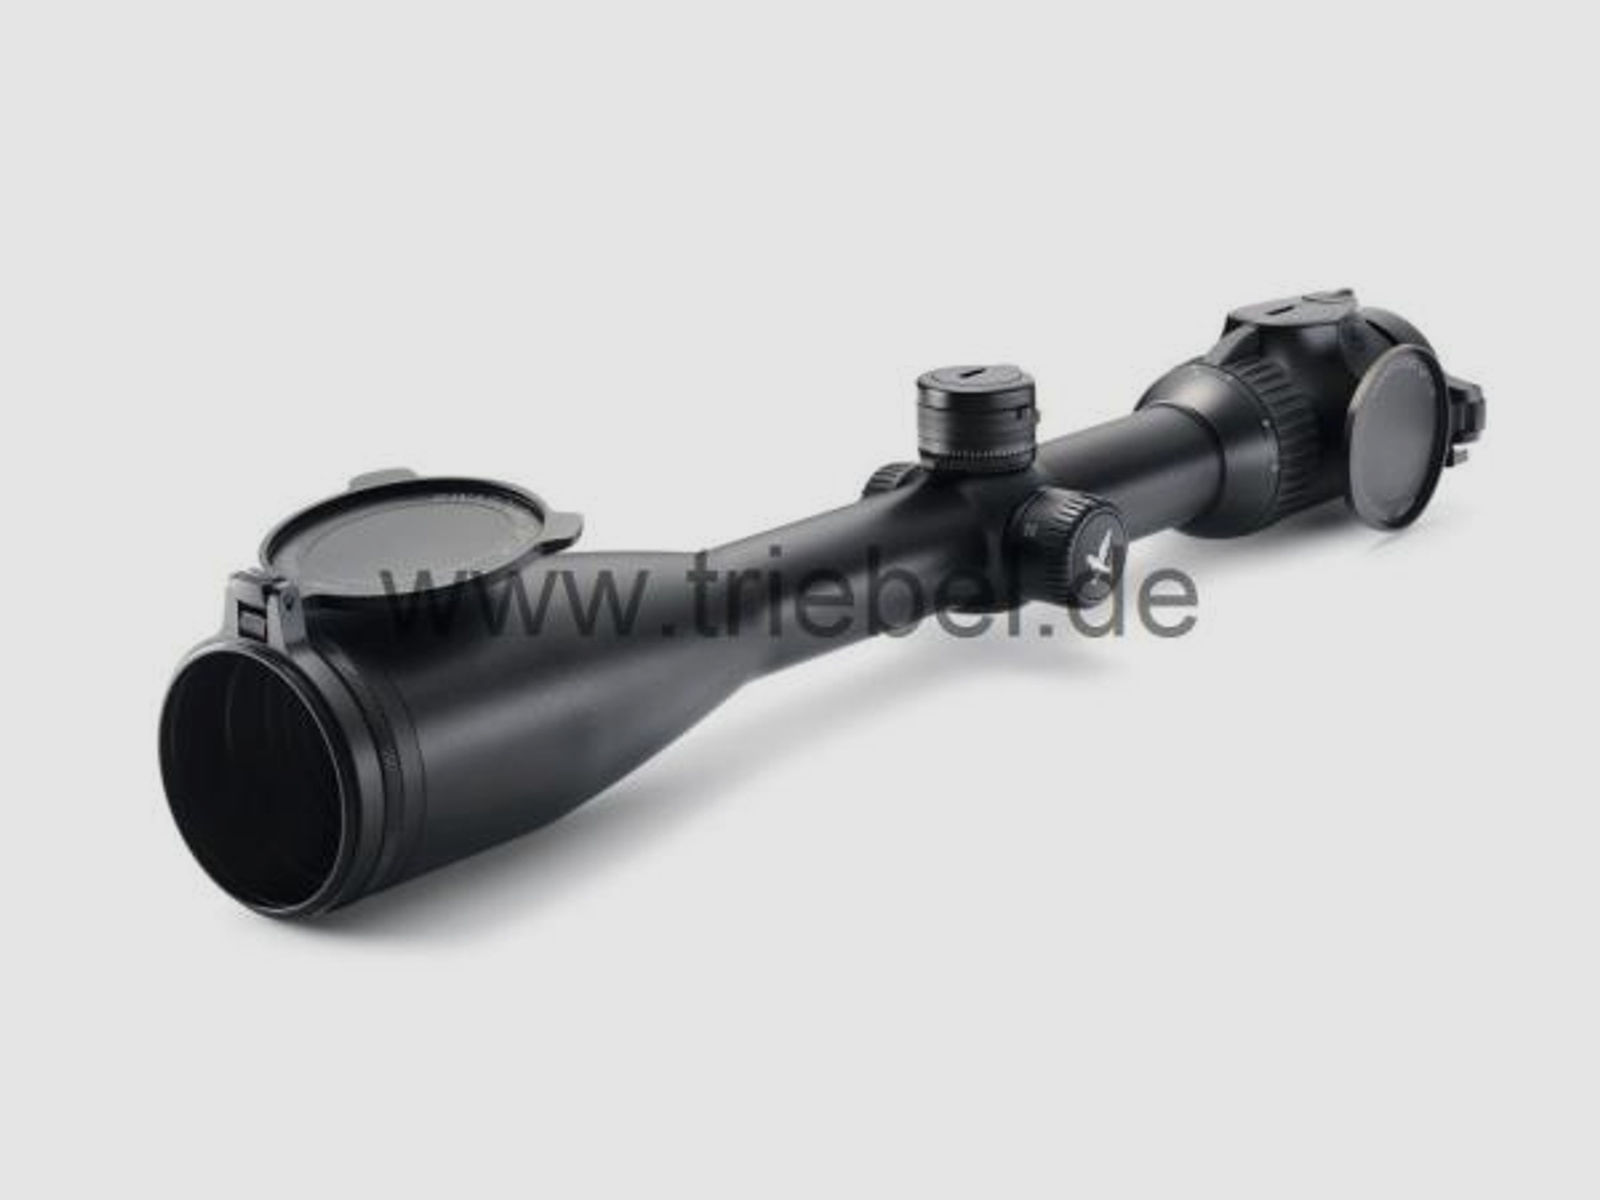 SWAROVSKI Zubehör für Zielfernrohre Objektivdeckel 50 mm SLP-O-50 f. Z8i, Z6(i), Z5, Z3, X5(i)